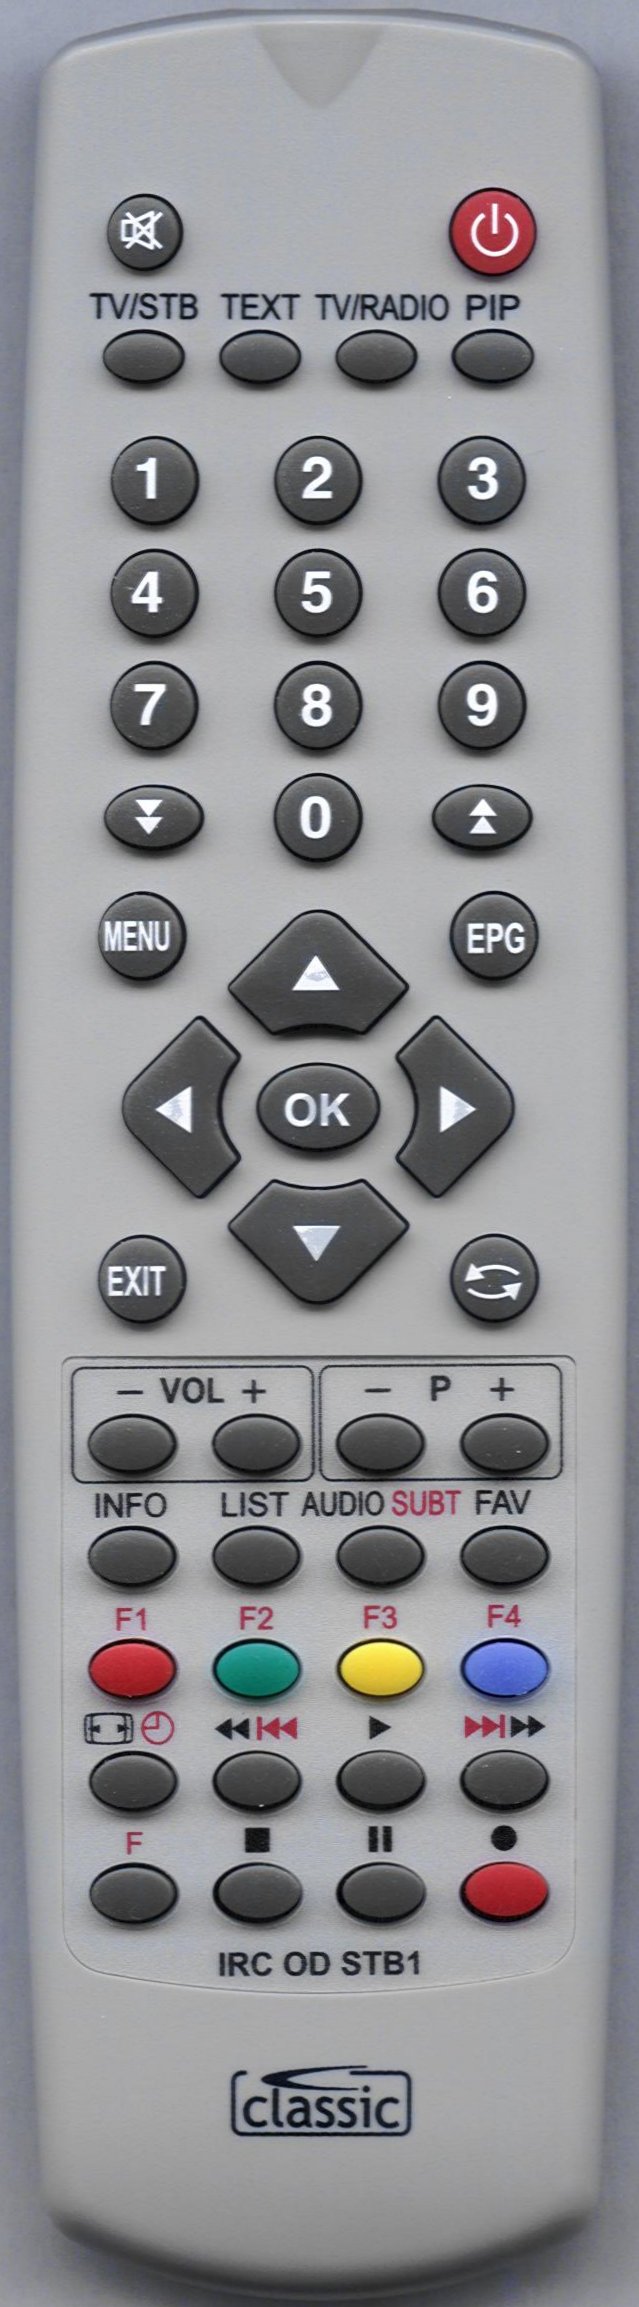 HUMAX 01400-3020 Remote Control